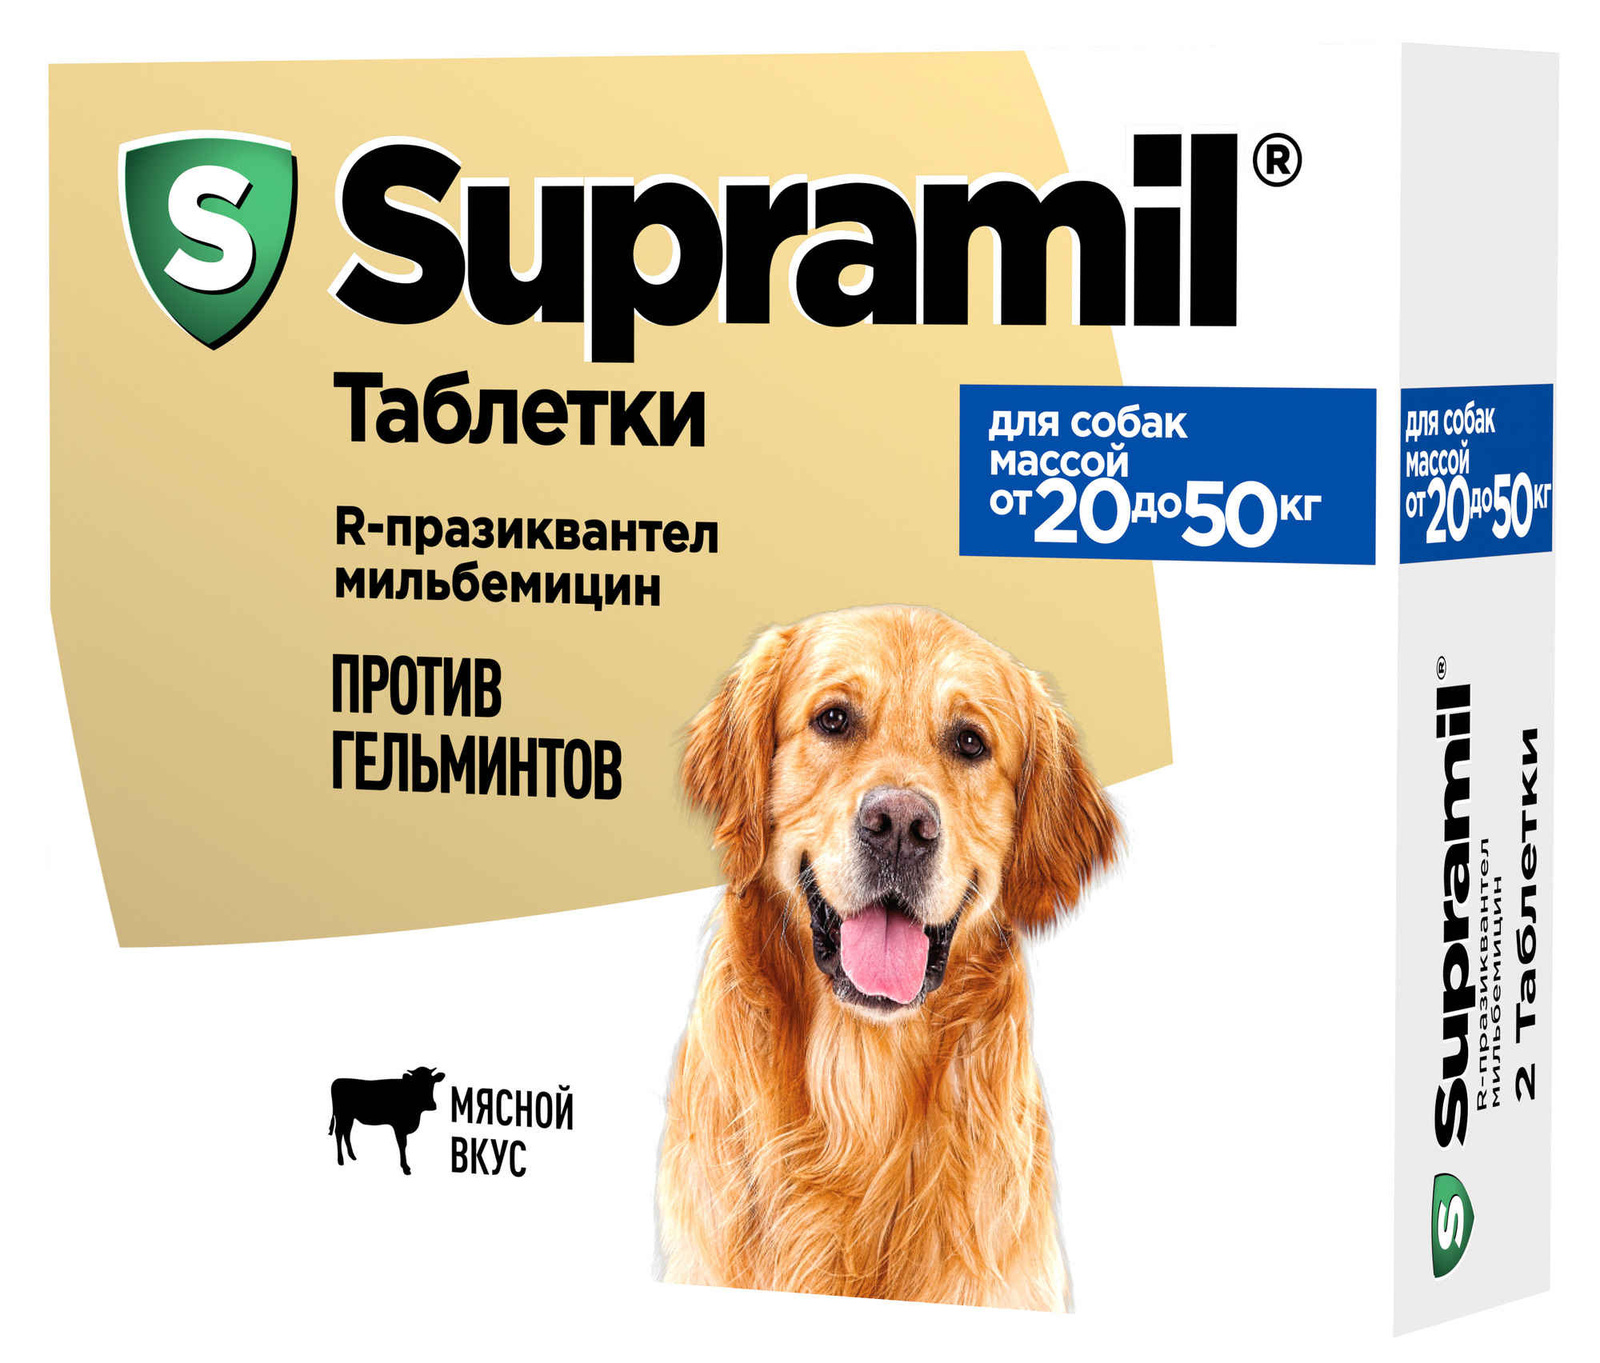 Астрафарм Астрафарм антигельминтный препарат Supramil для щенков и собак массой от 20 до 50 кг, таблетки (20 г) астрафарм supramil таблетки для щенков и собак массой до 20 кг 2 таб